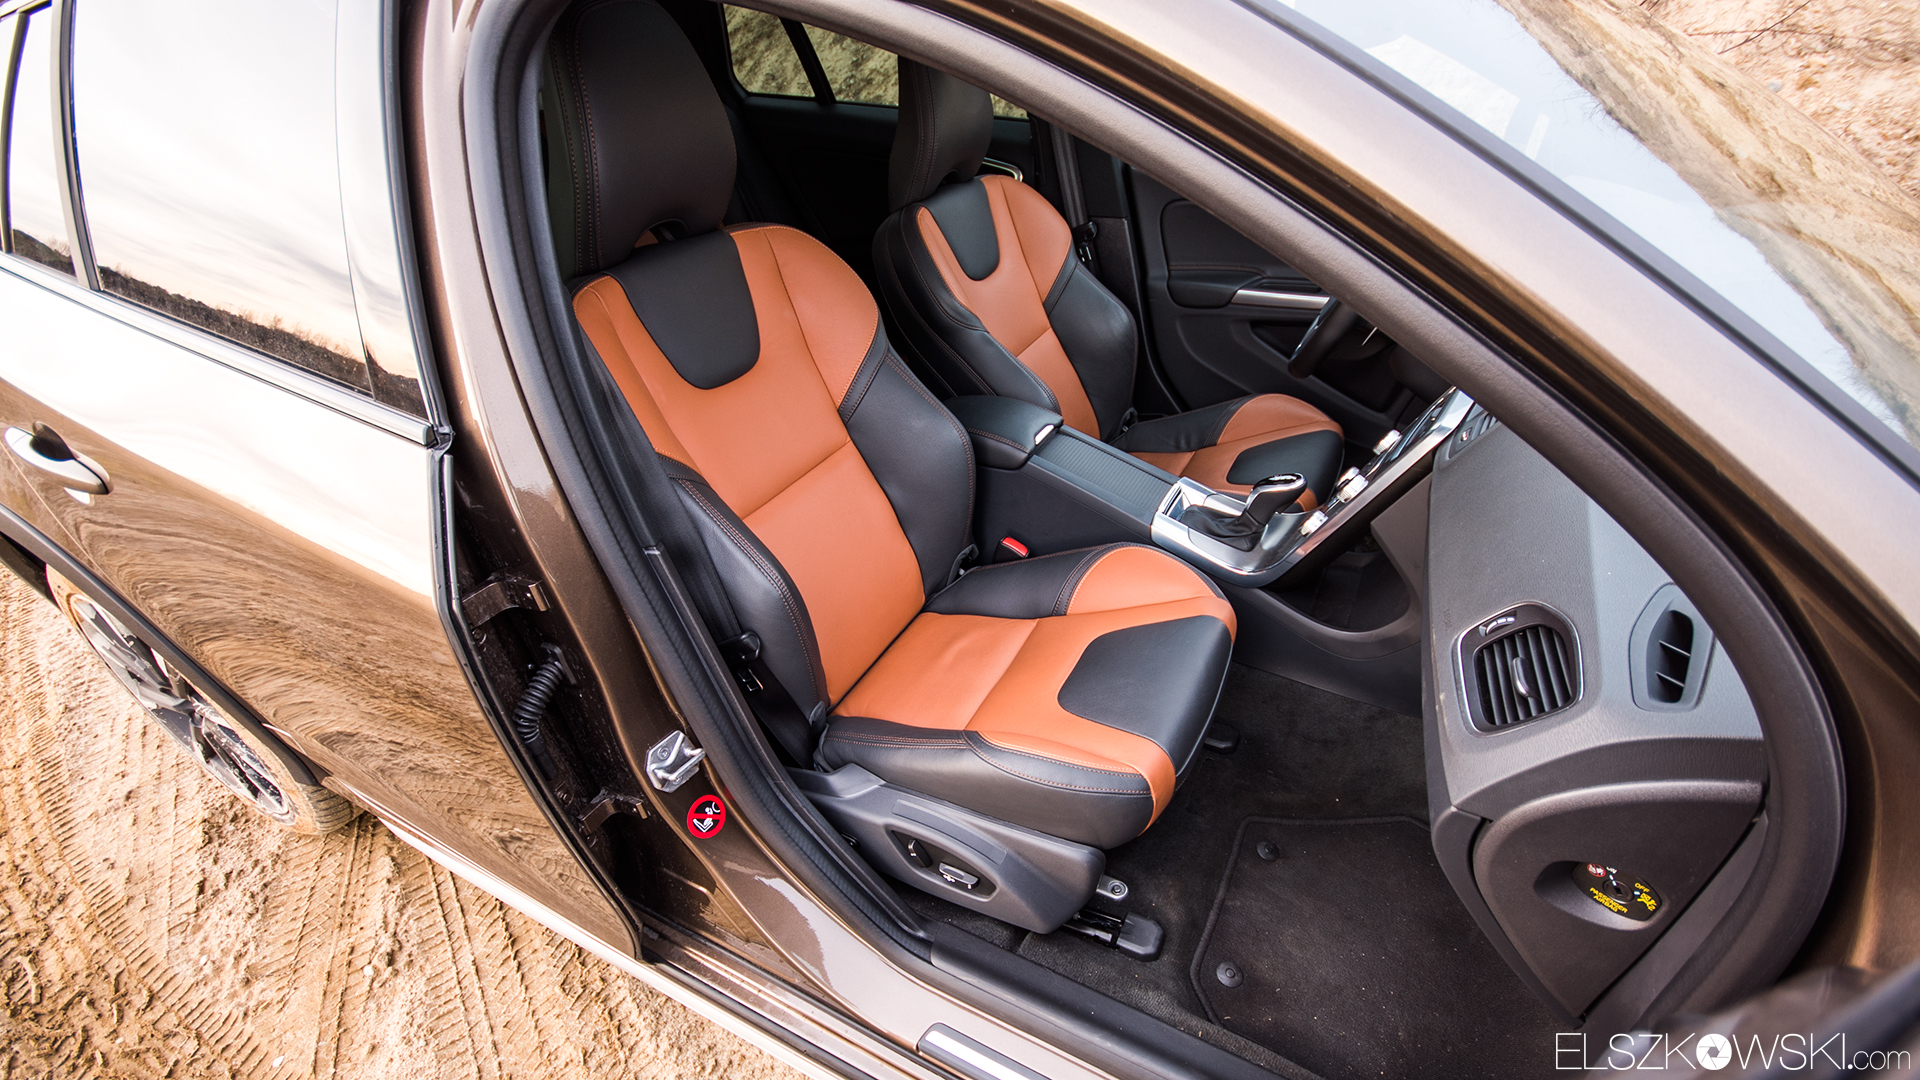 Test porównawczy Volvo i Seat